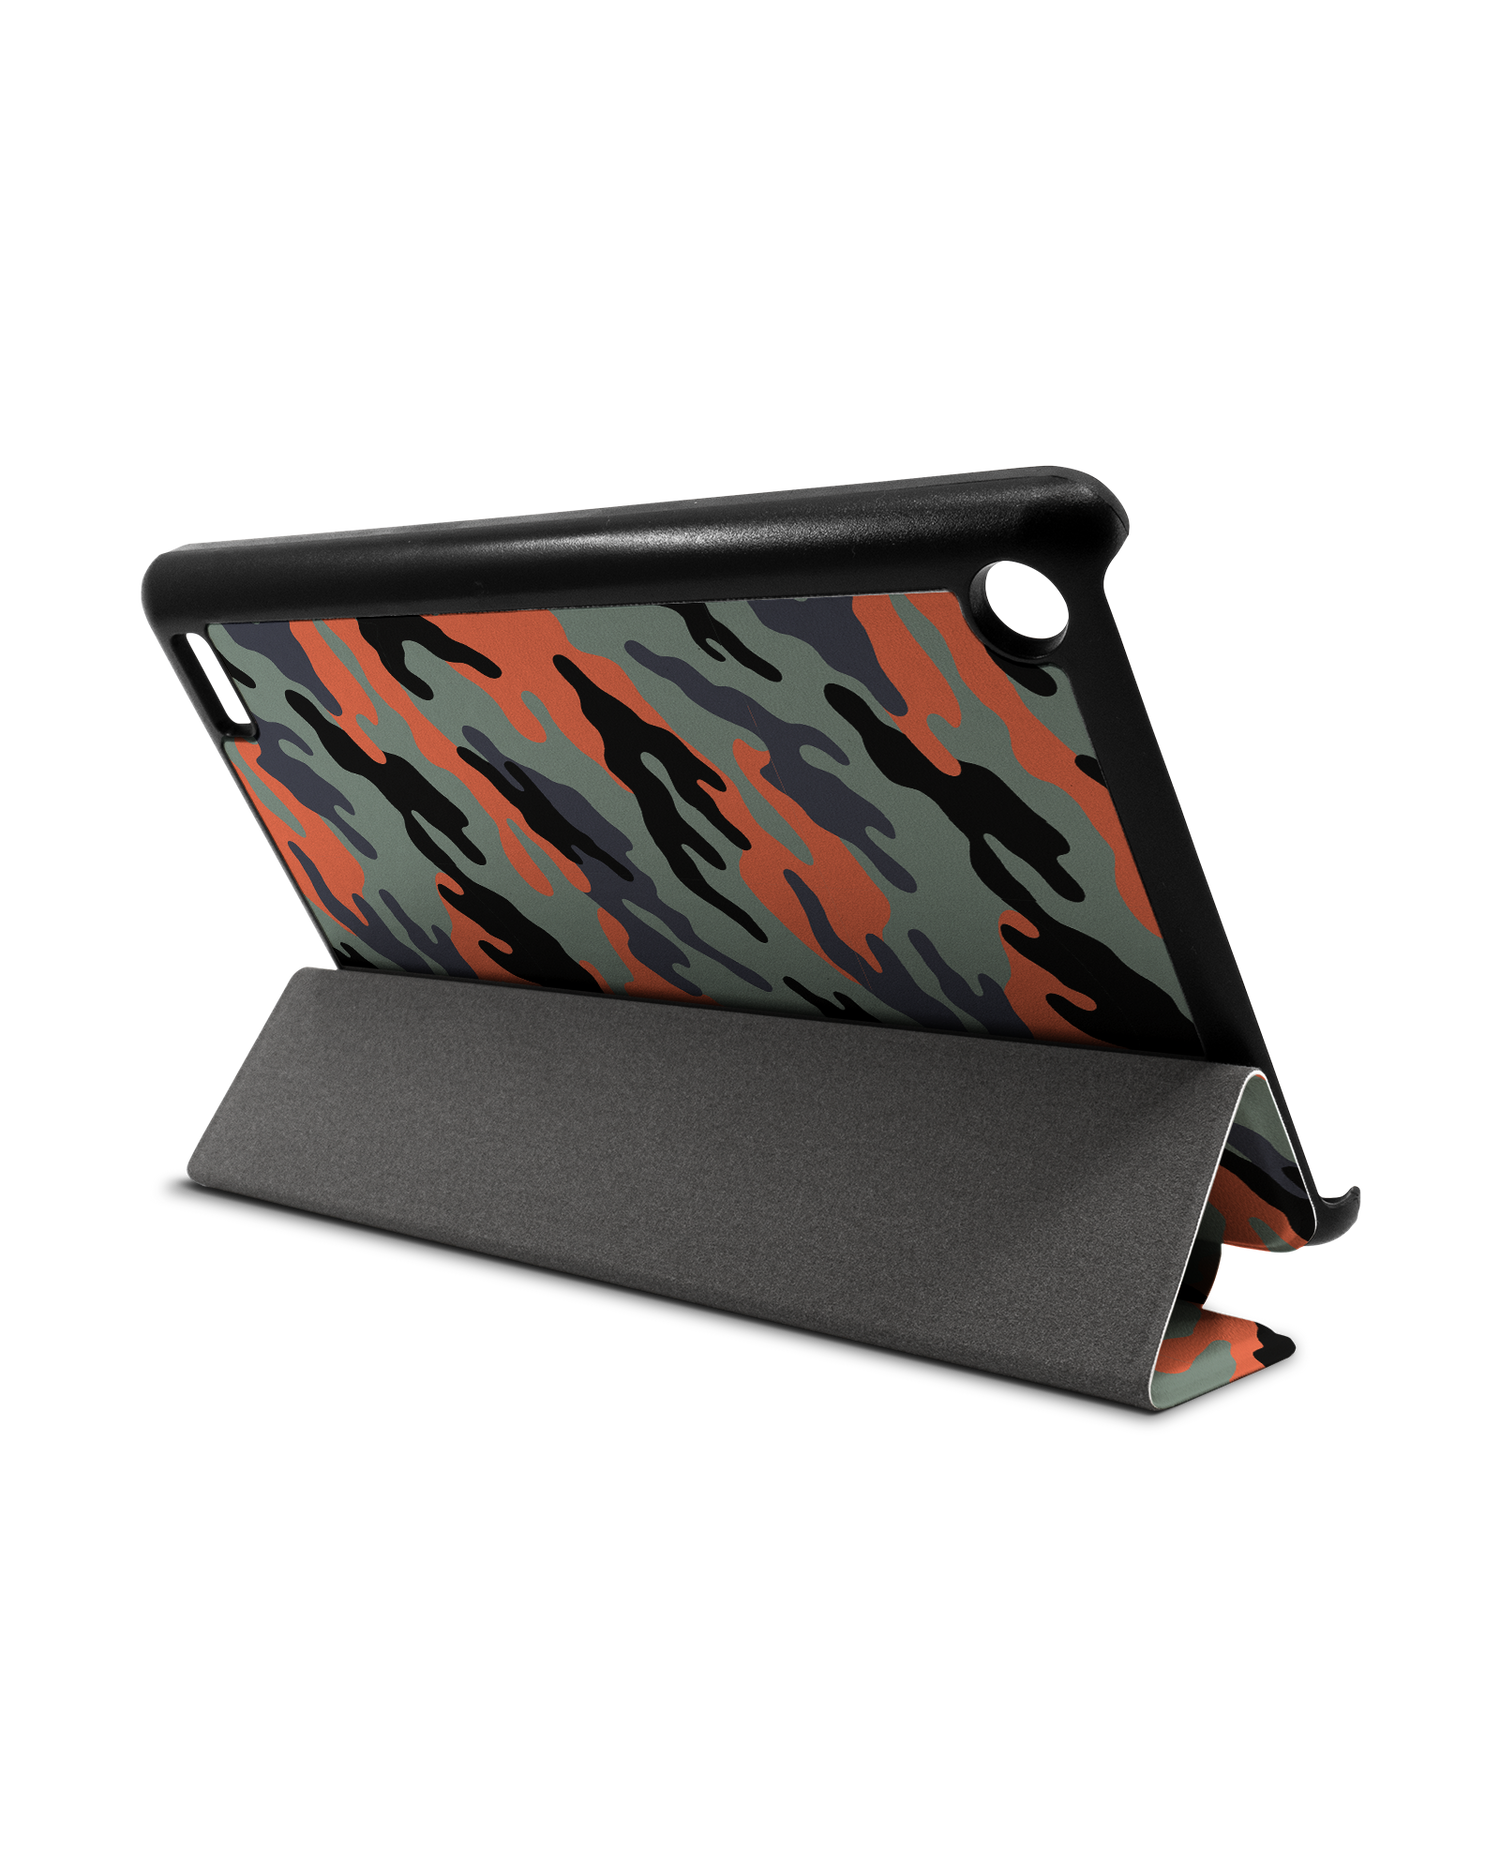 Camo Sunset Tablet Smart Case für Amazon Fire 7: Aufgestellt im Querformat